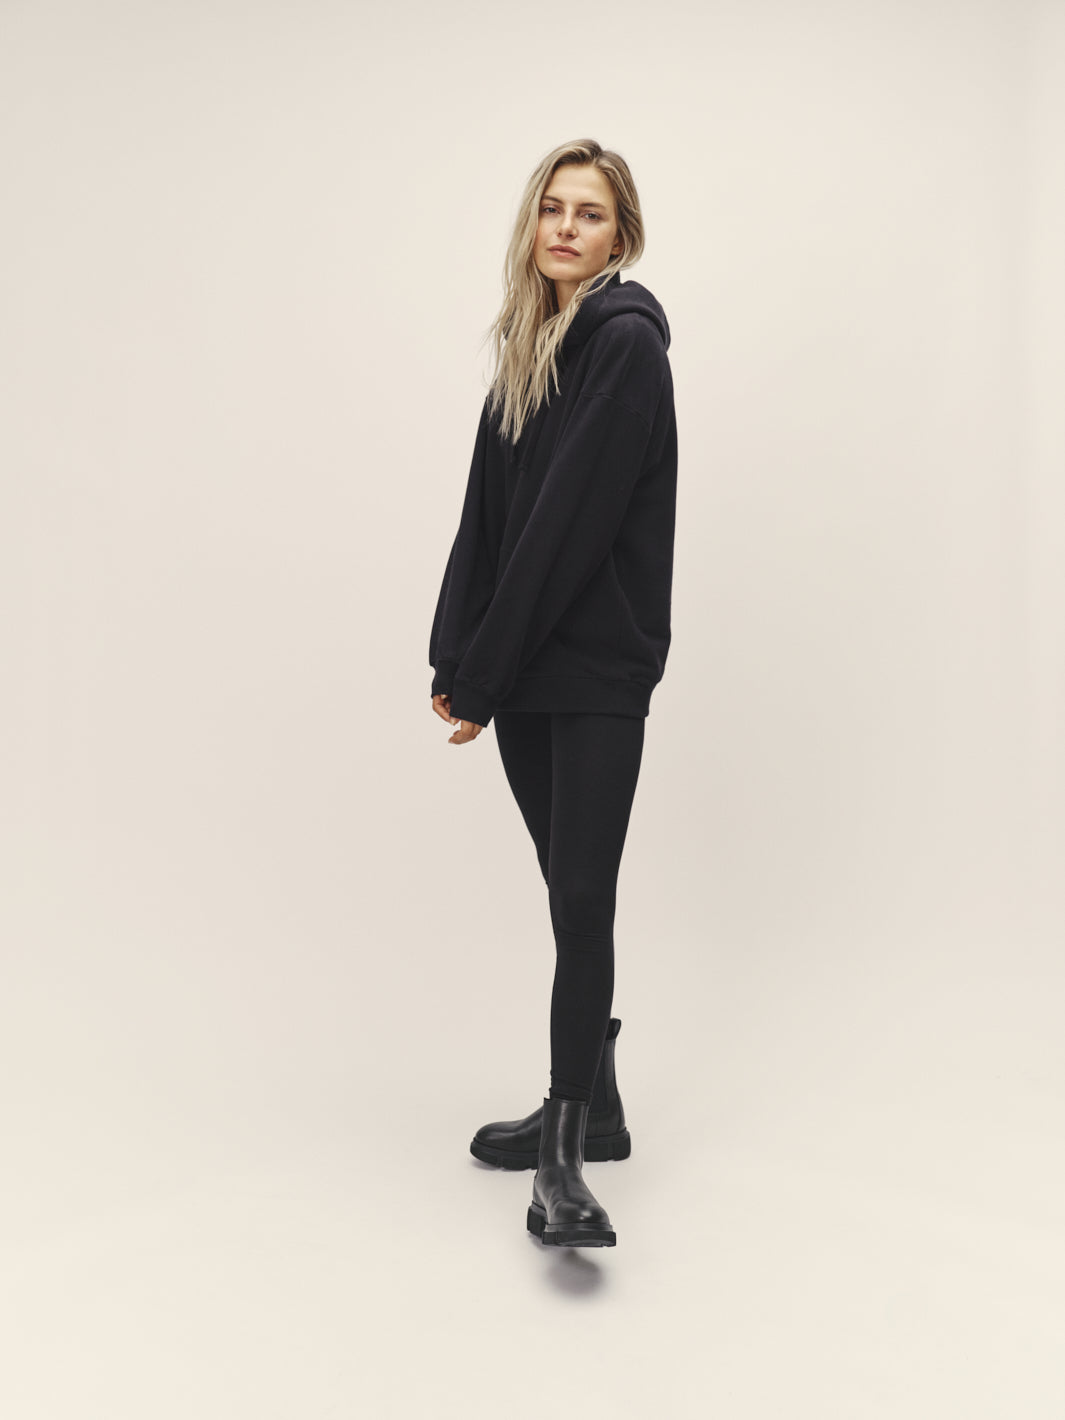 Damen Kapuzen Sweatshirt organic Cotton nachhaltig gefertigt in Portugal Farbe schwarz